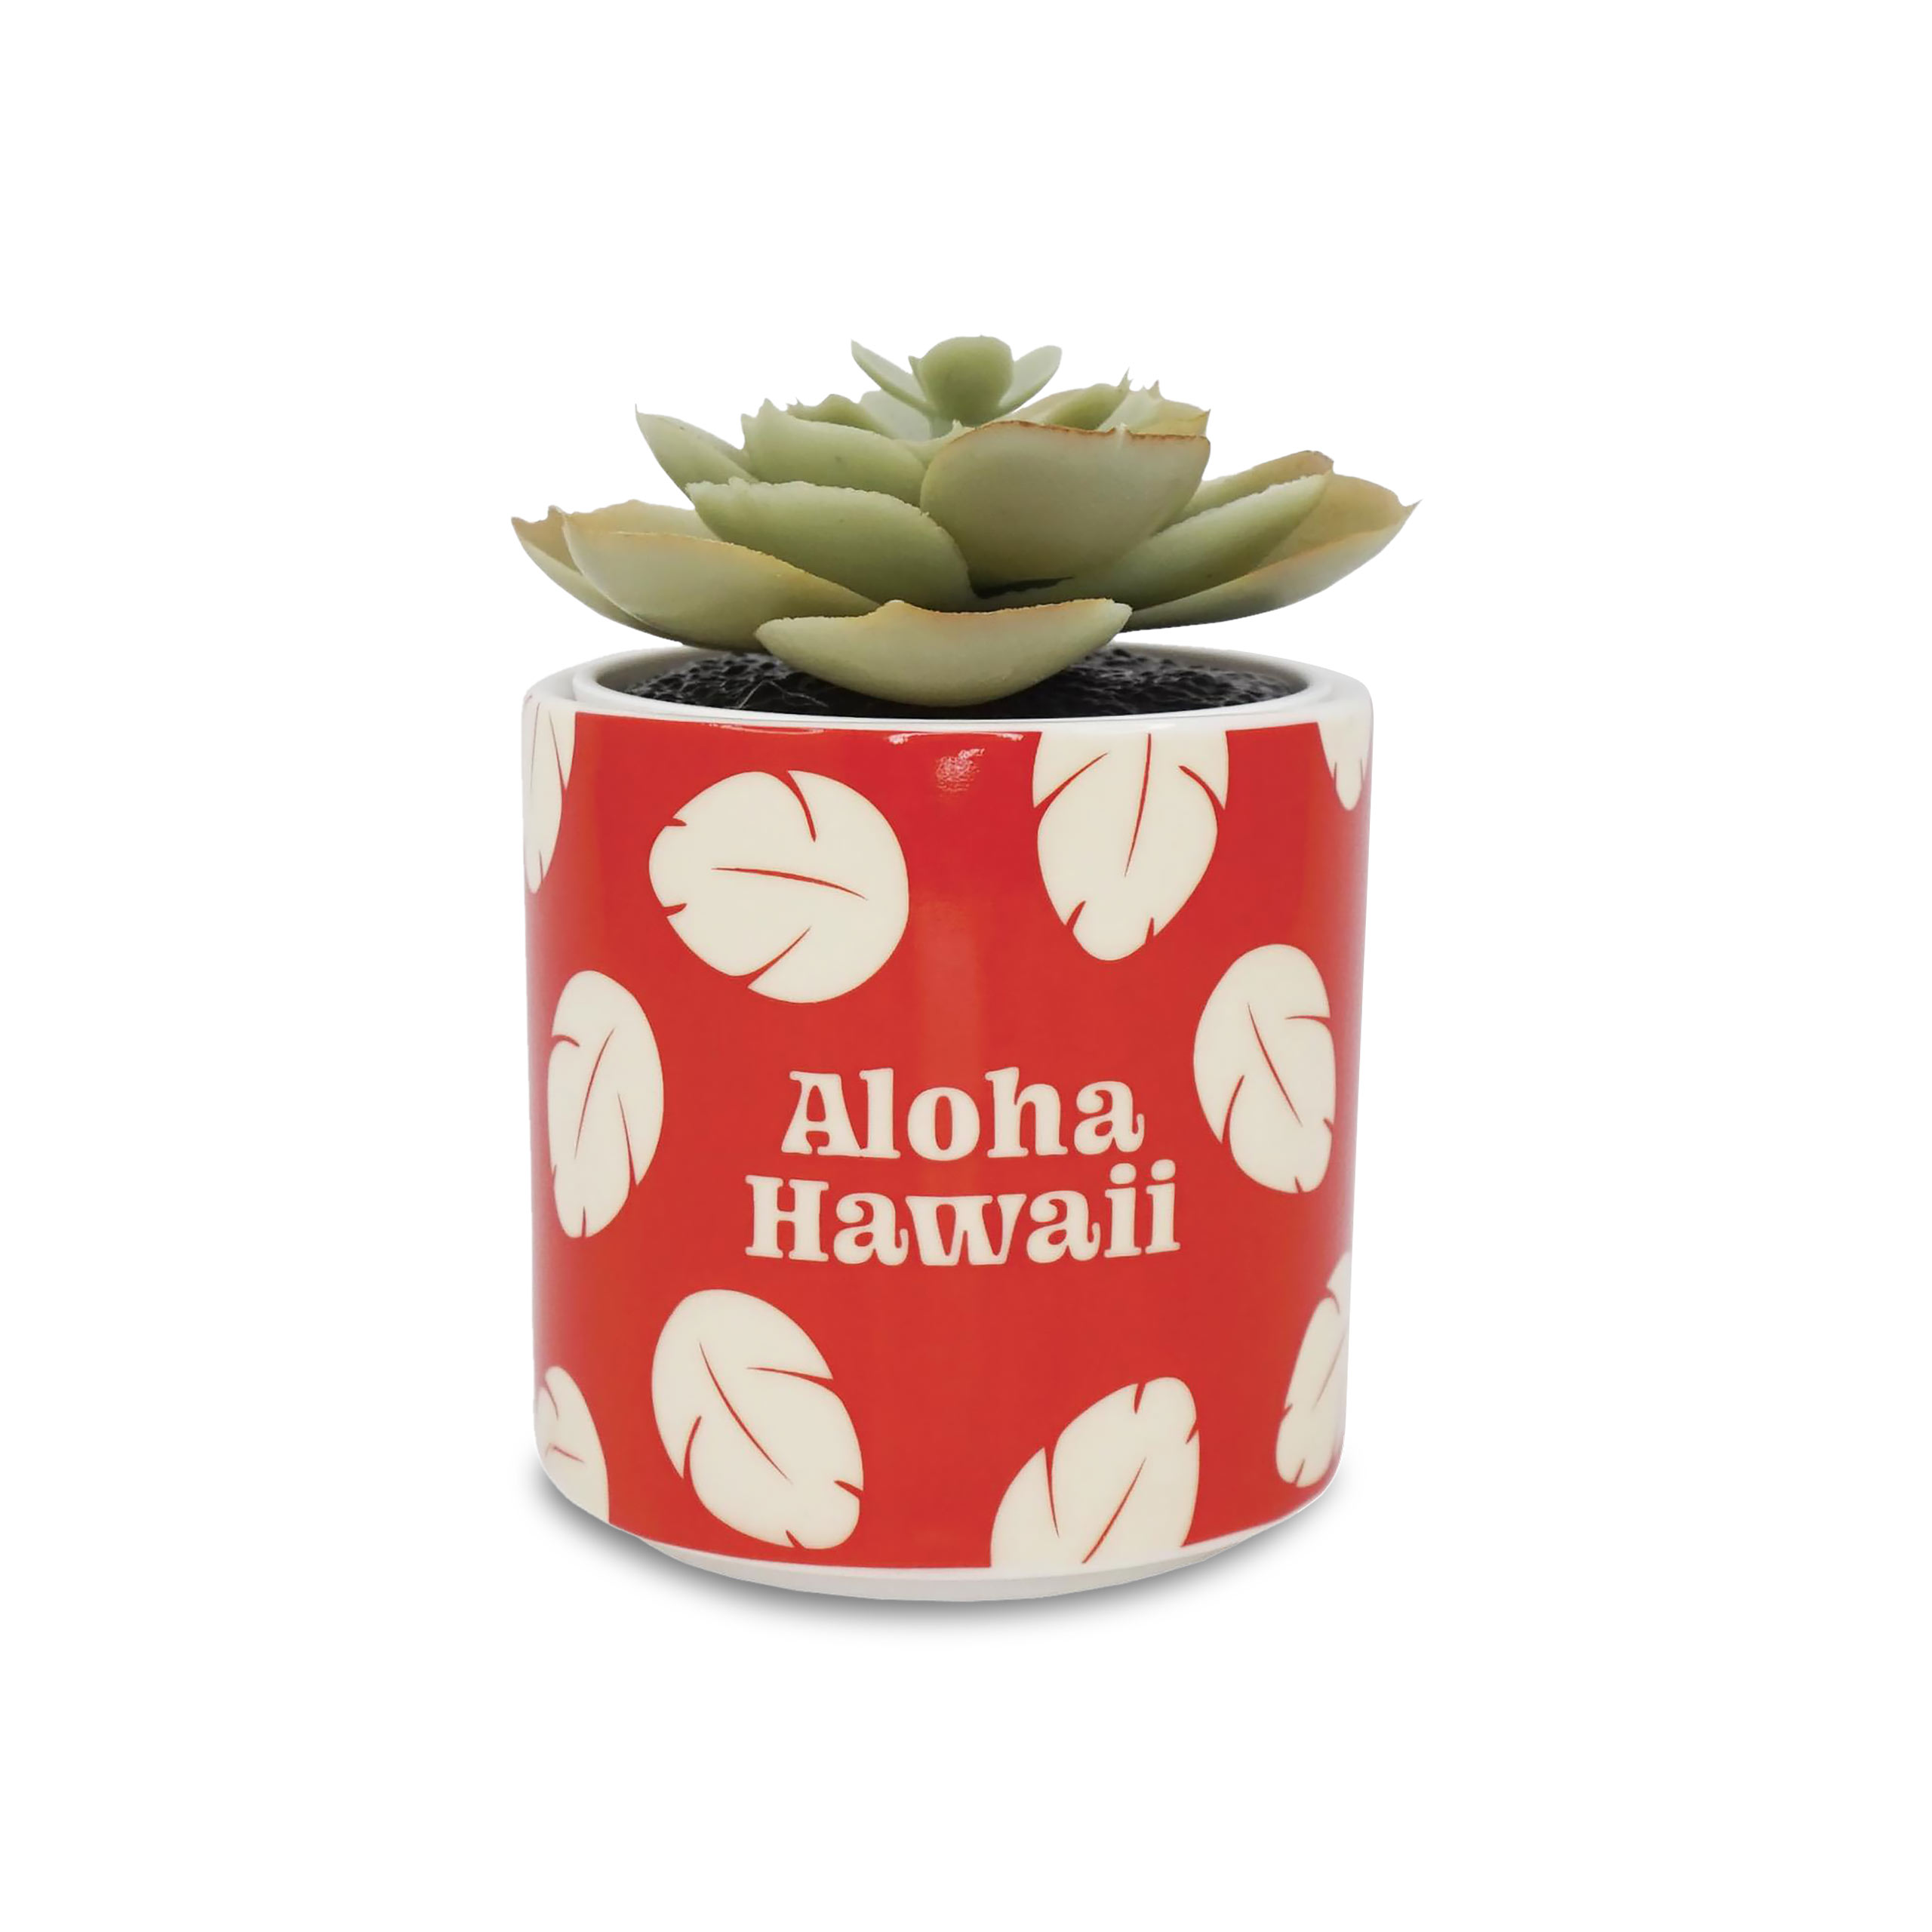 Lilo & Stitch - Aloha Hawaii Mini Blumentopf